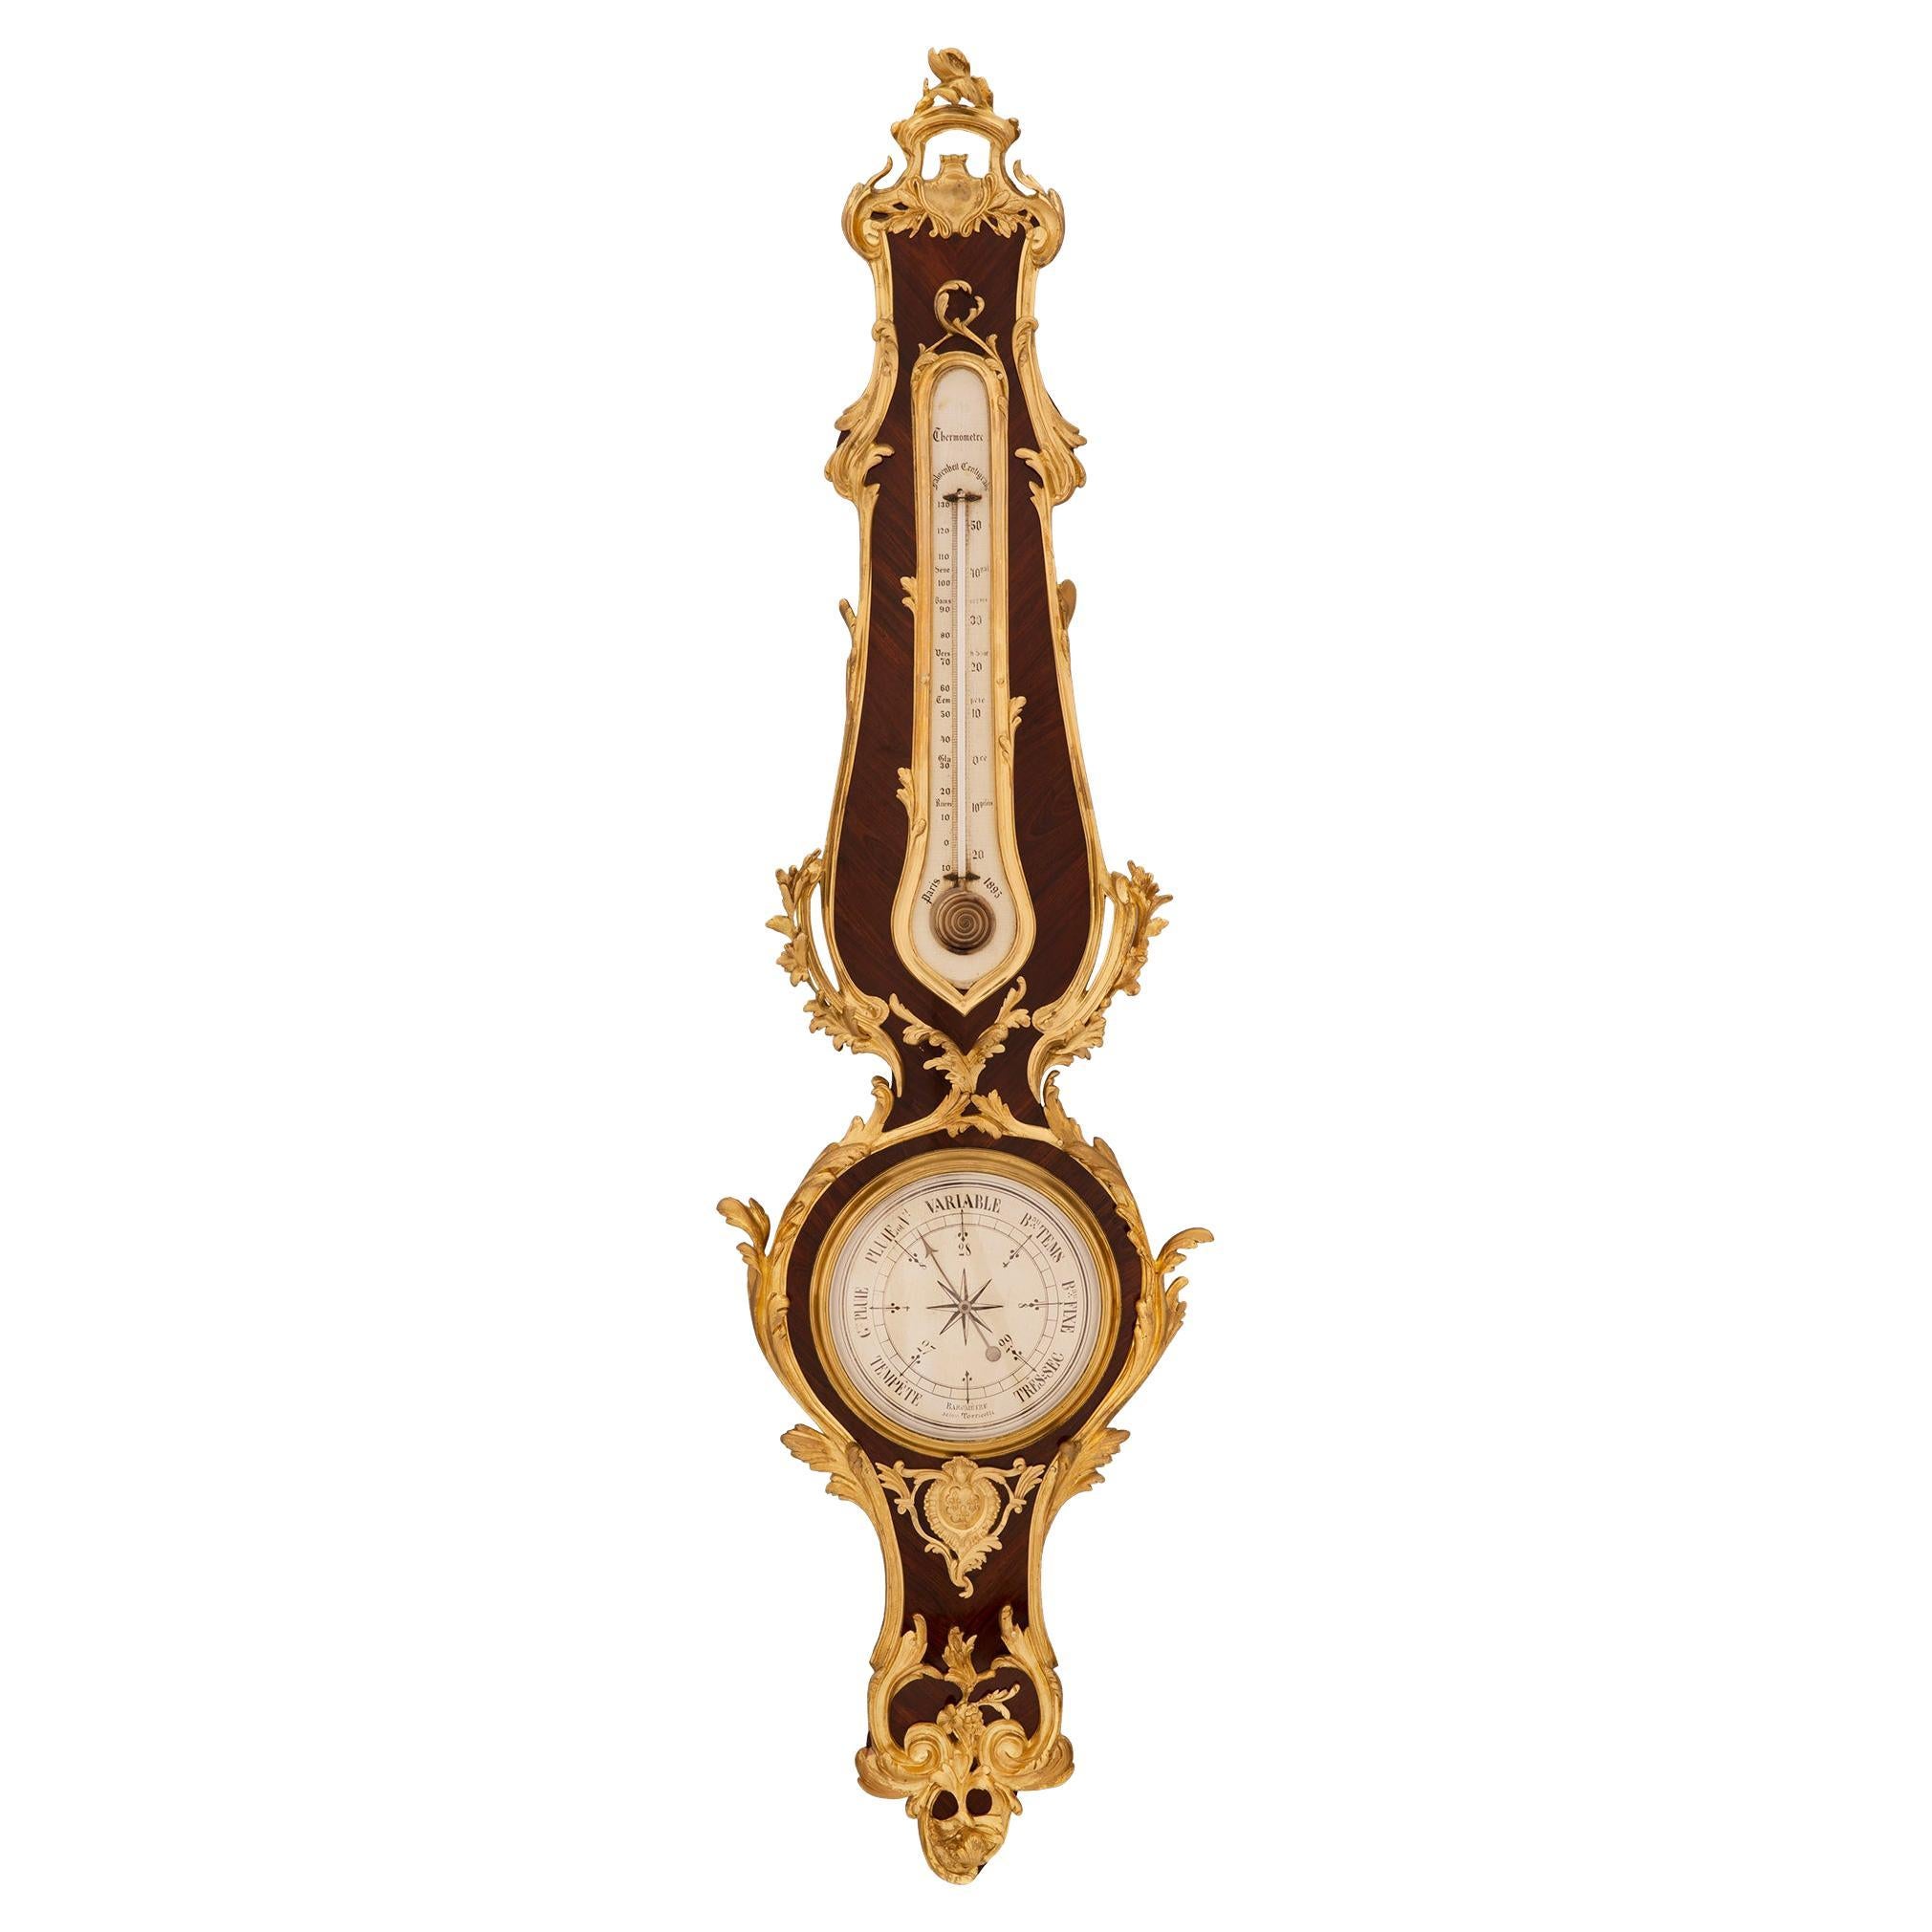 Baromètre/thermomètre de style Louis XV du XIXe siècle en bois de violette et bronze doré